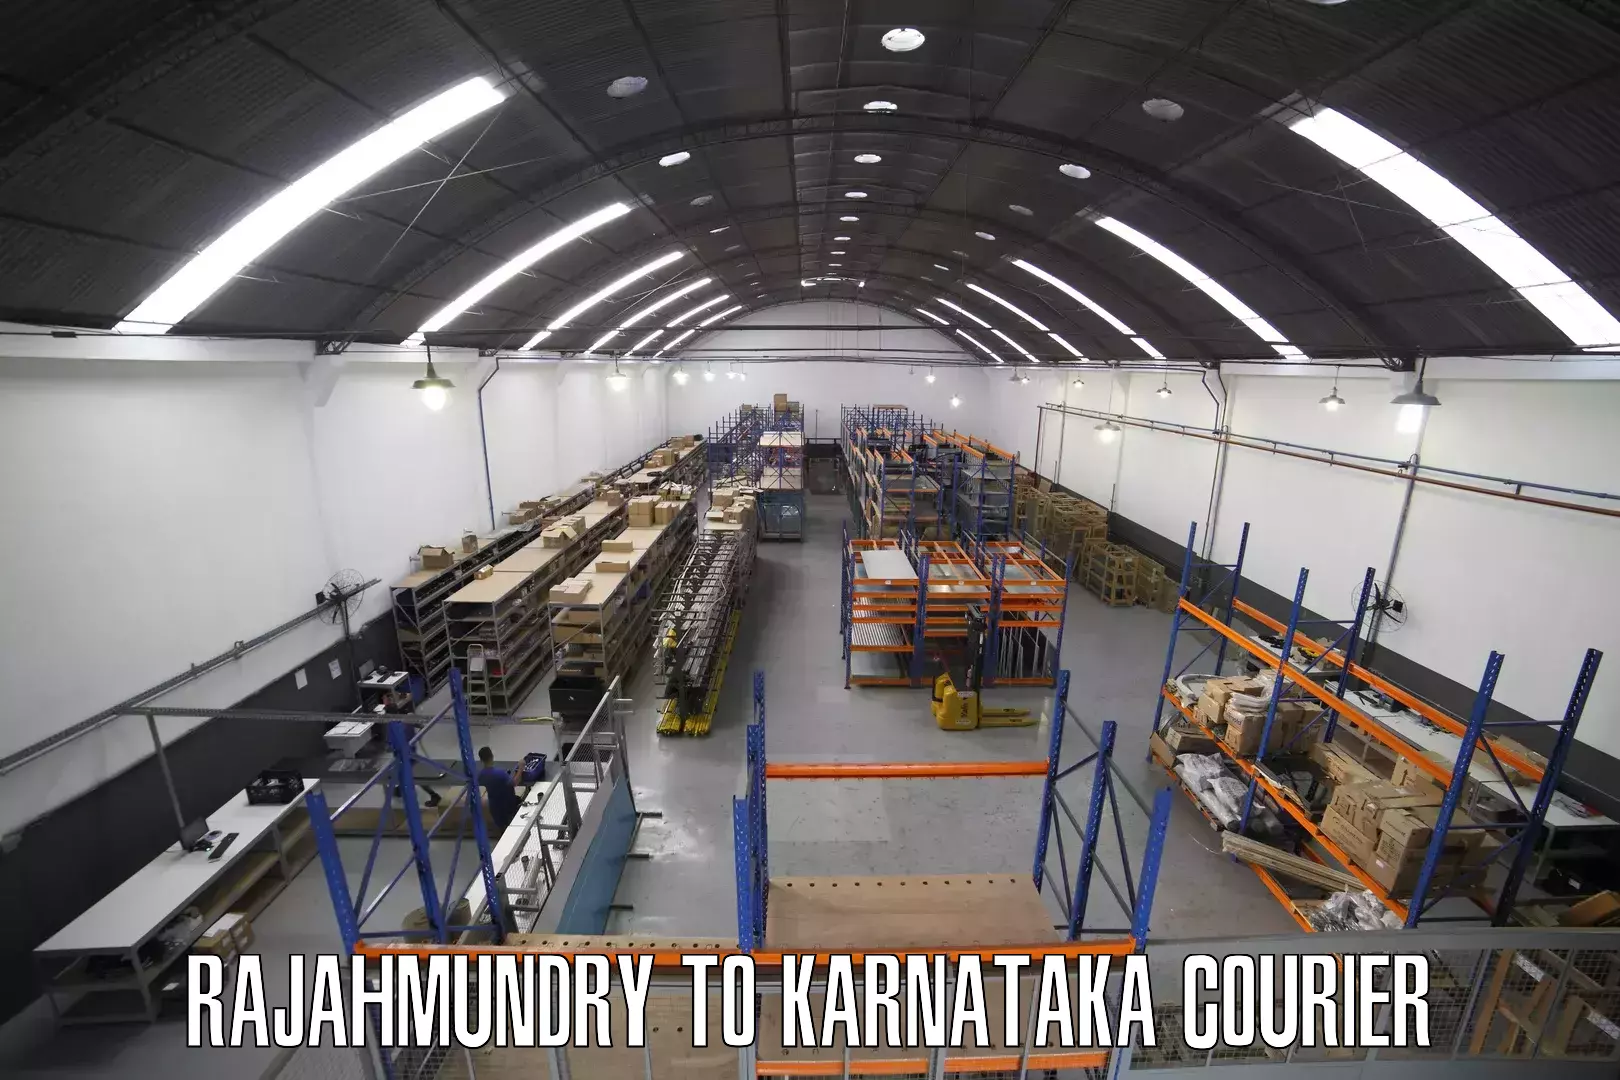 High-capacity parcel service Rajahmundry to Karnataka